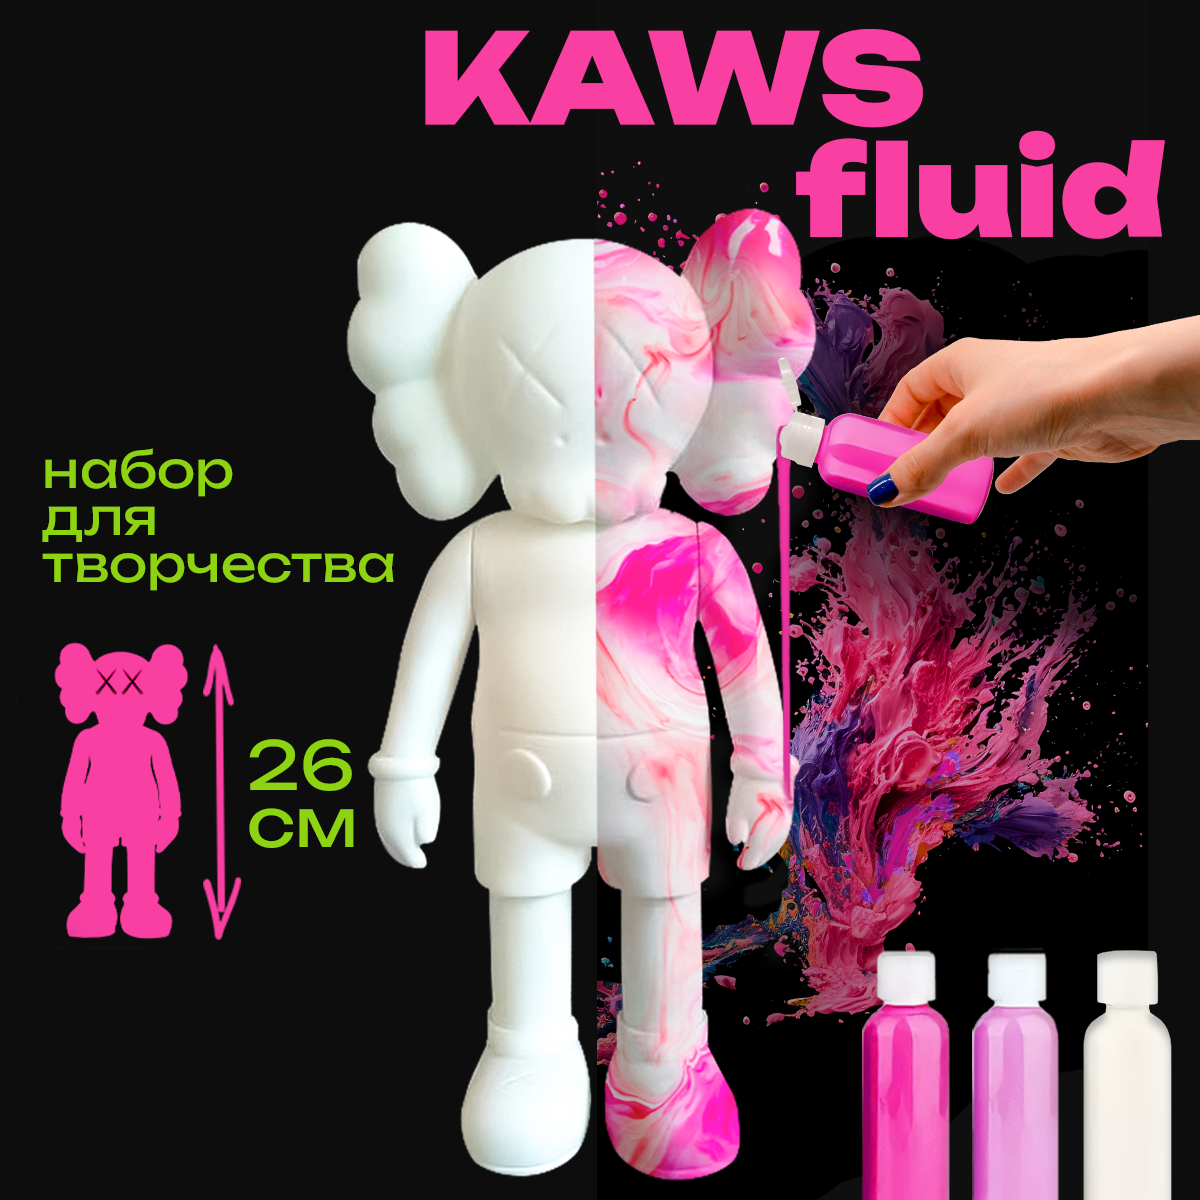 KAWS фигурка раскраска, игрушка 23 см, флюид арт набор творчества для взрослых и детей, фигурки коллекционные малиновый, розовый, белый, Cozy&Dozy